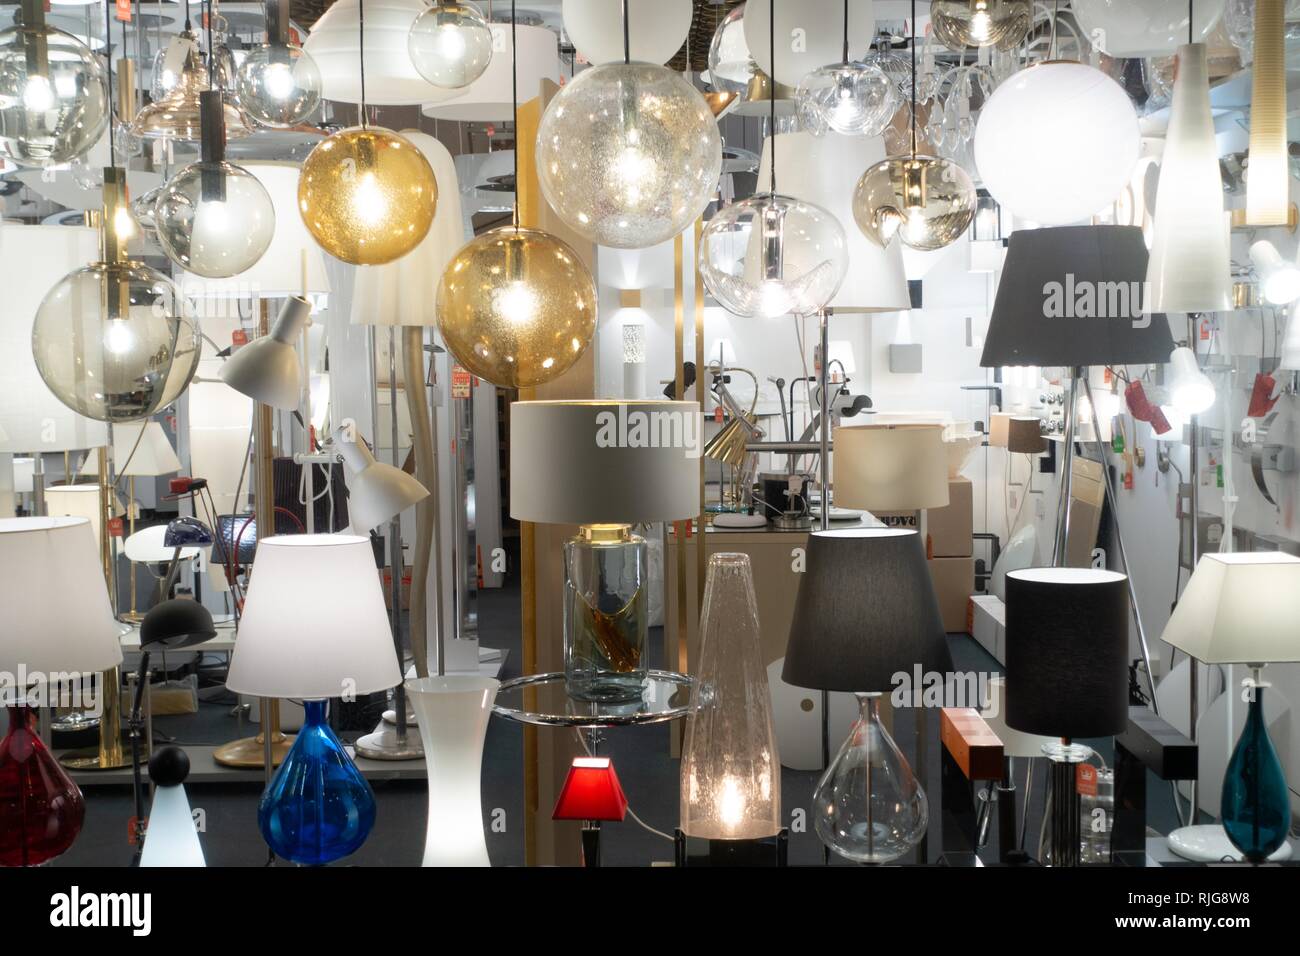 Verschiedene Lampen im shop Fenster, München, Deutschland Stockfoto